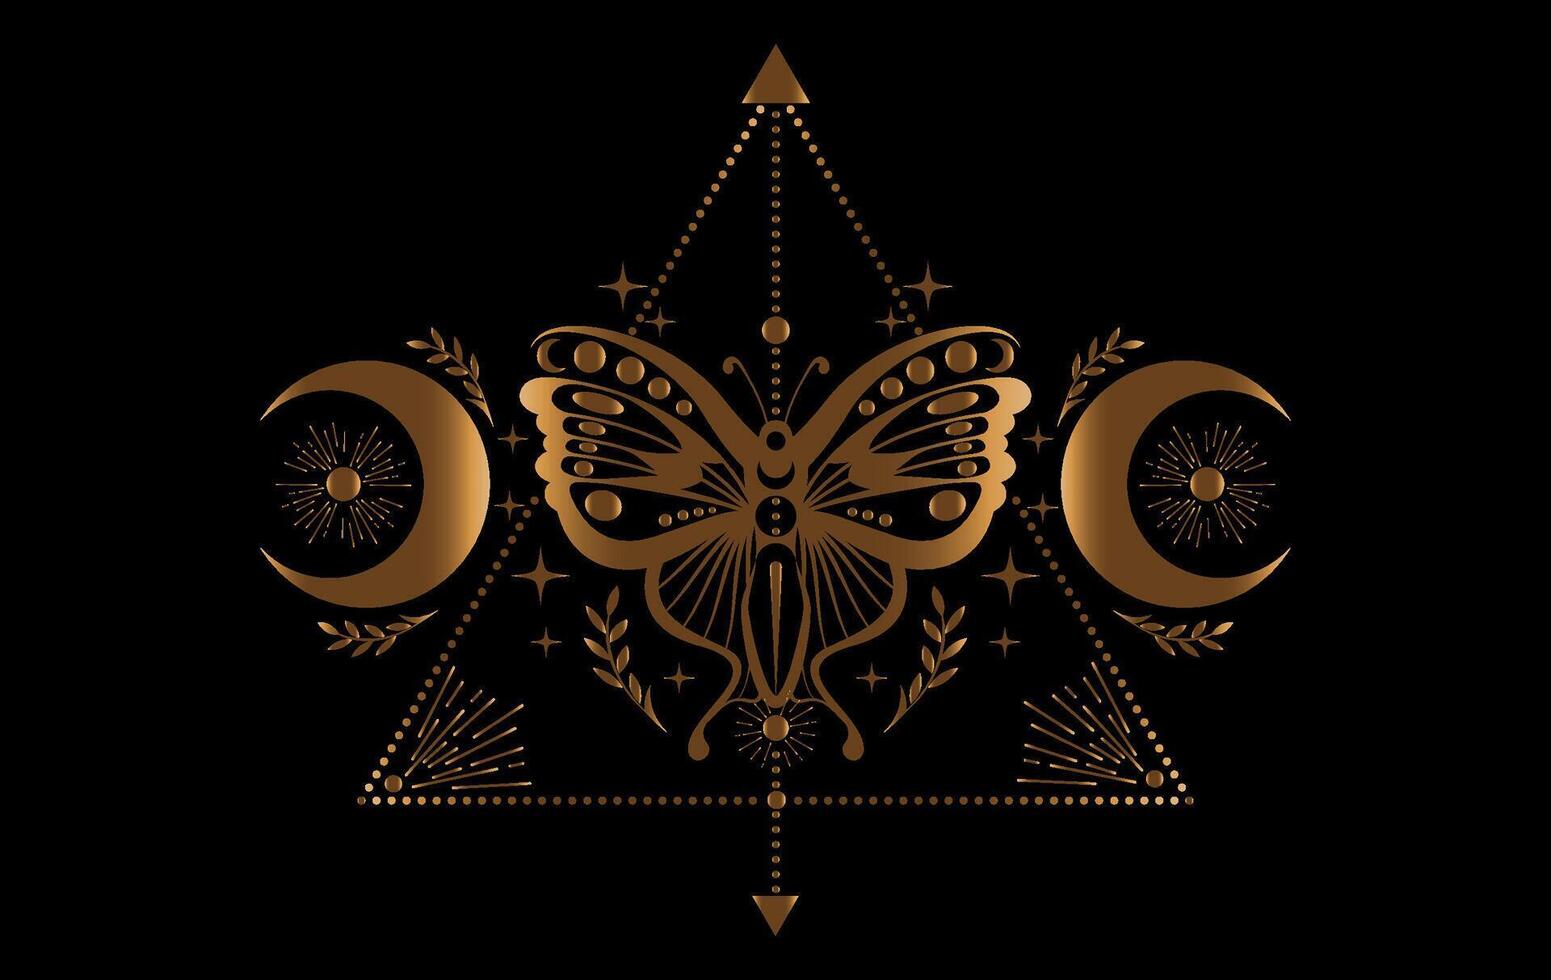 místico ouro mariposa, Magia borboleta e crescente lua, sagrado símbolos para feitiçaria, oculto, esoterismo, imprimir, poster. vetor dourado pagão mágico foca isolado em Preto fundo